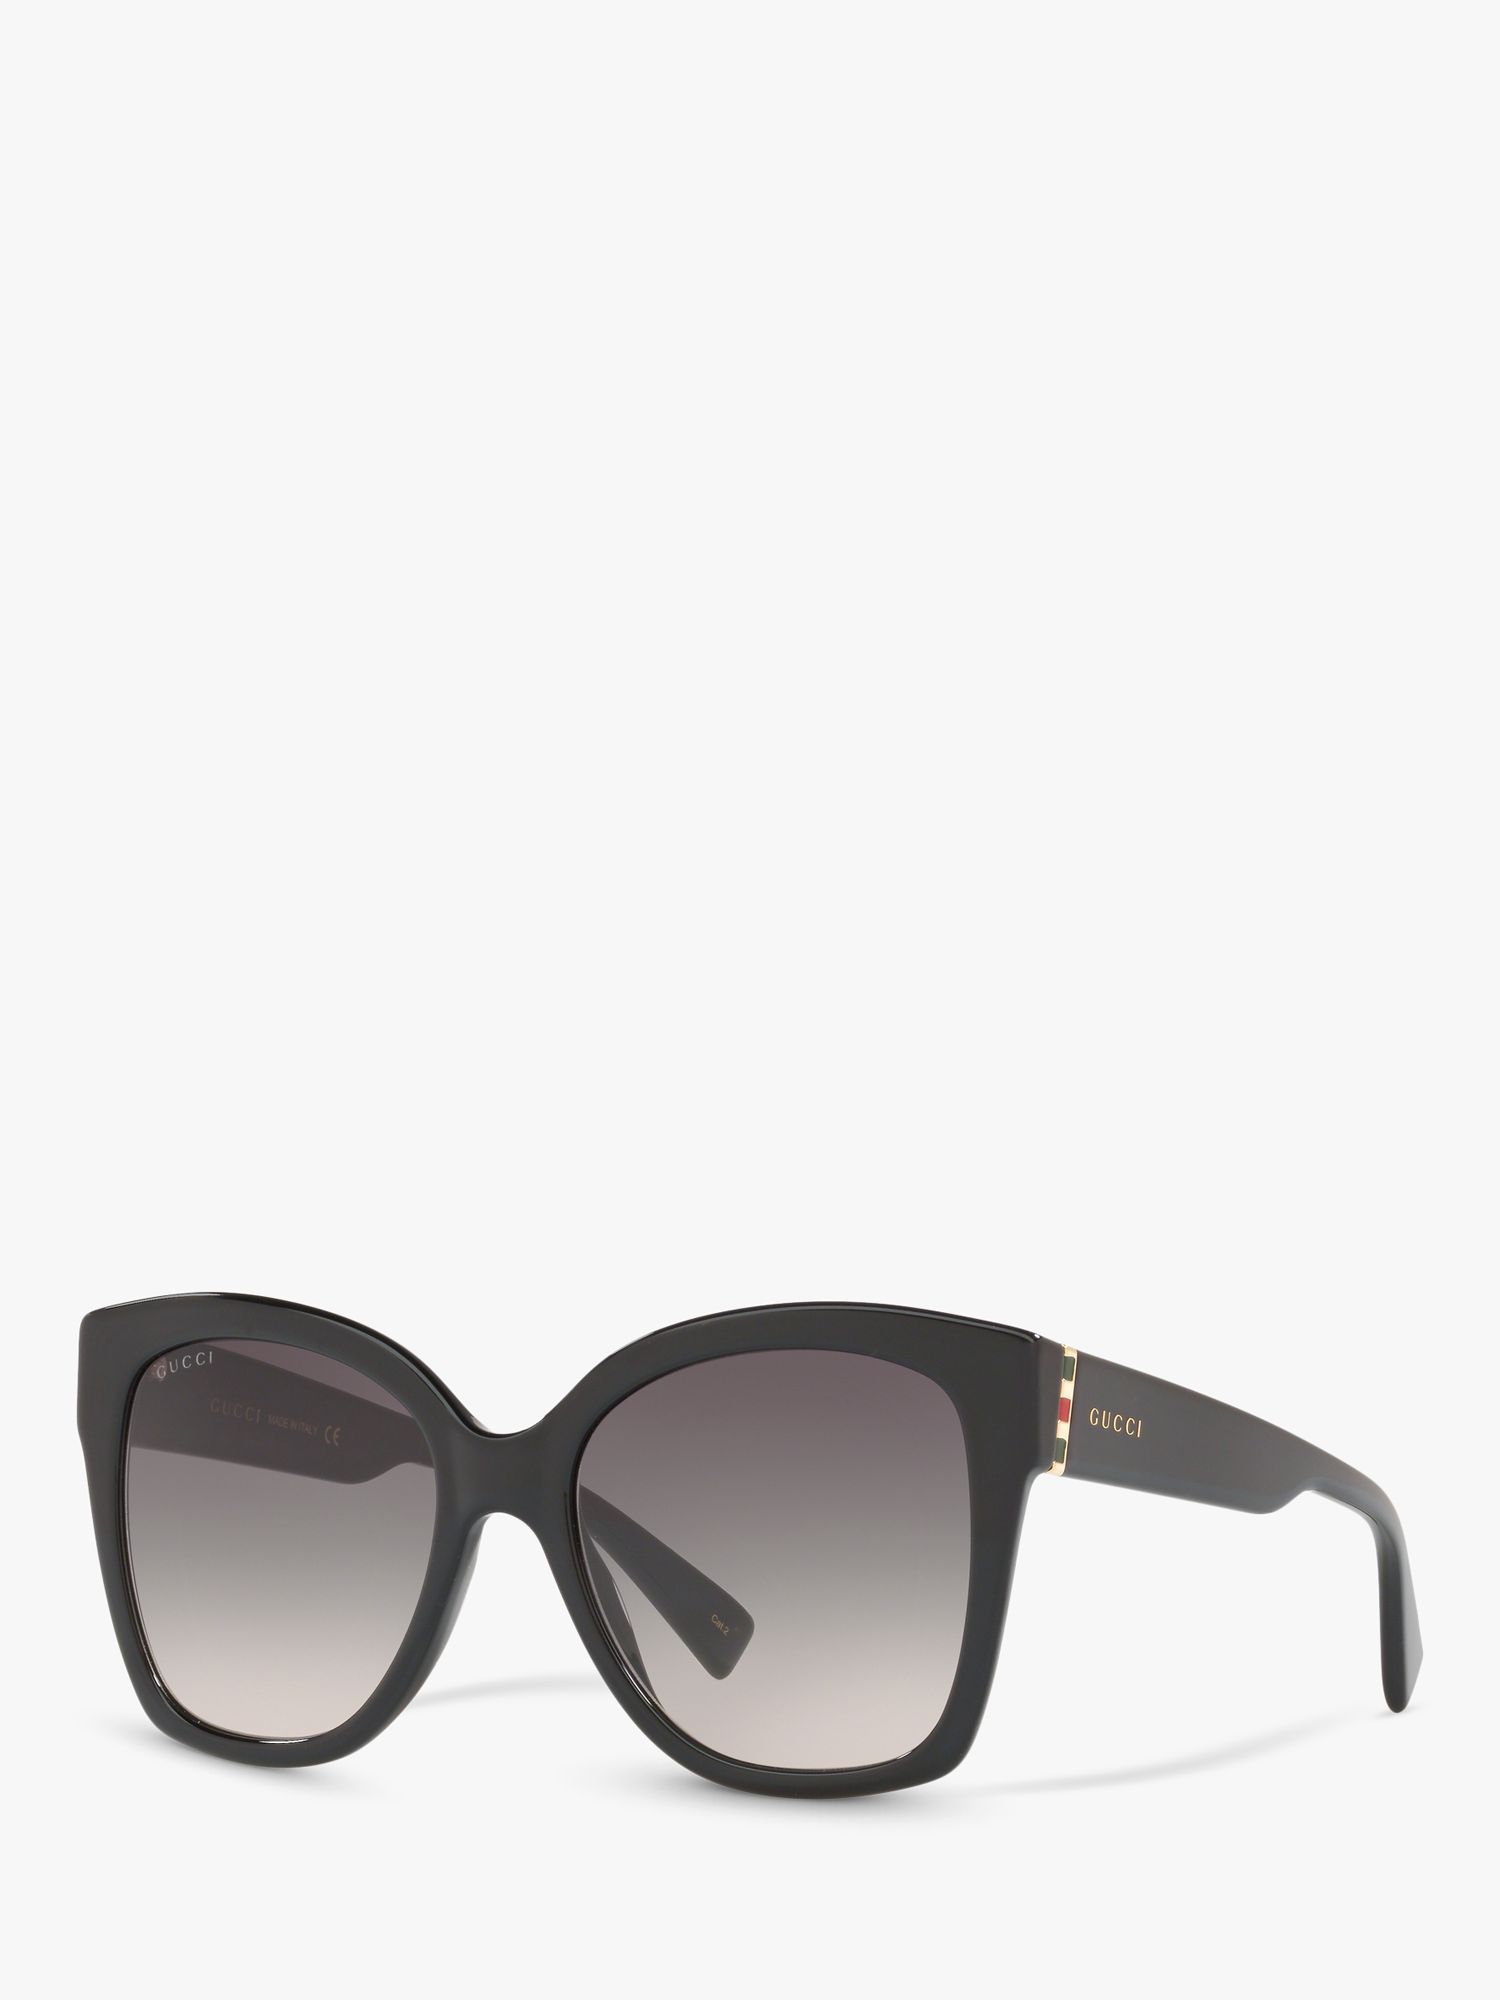 gucci women's square sunglasses